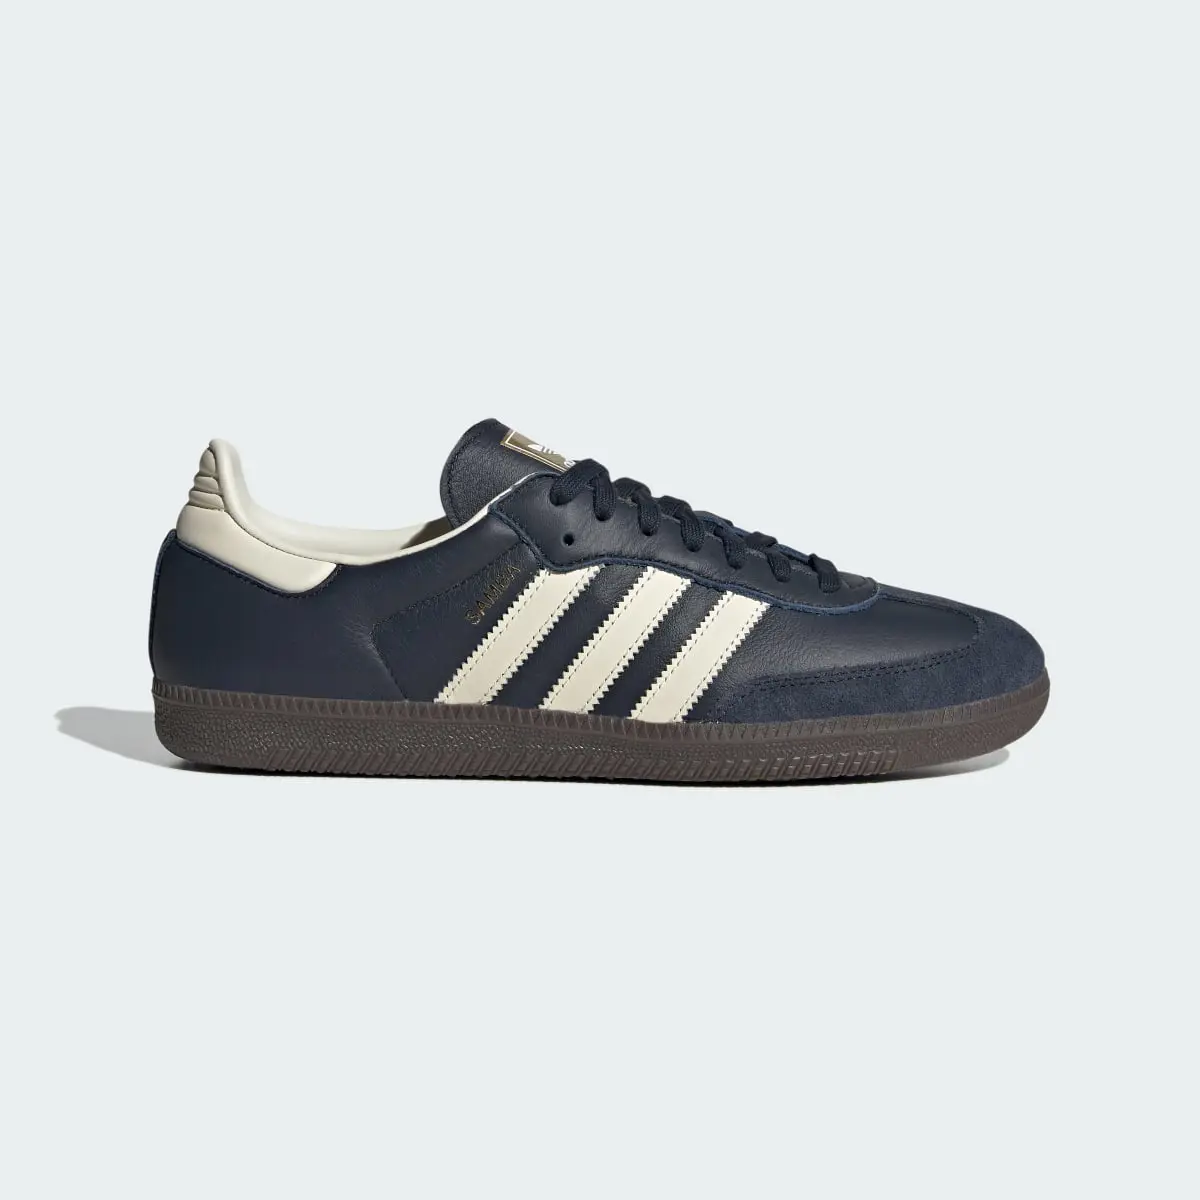 Adidas Samba OG Shoes. 2